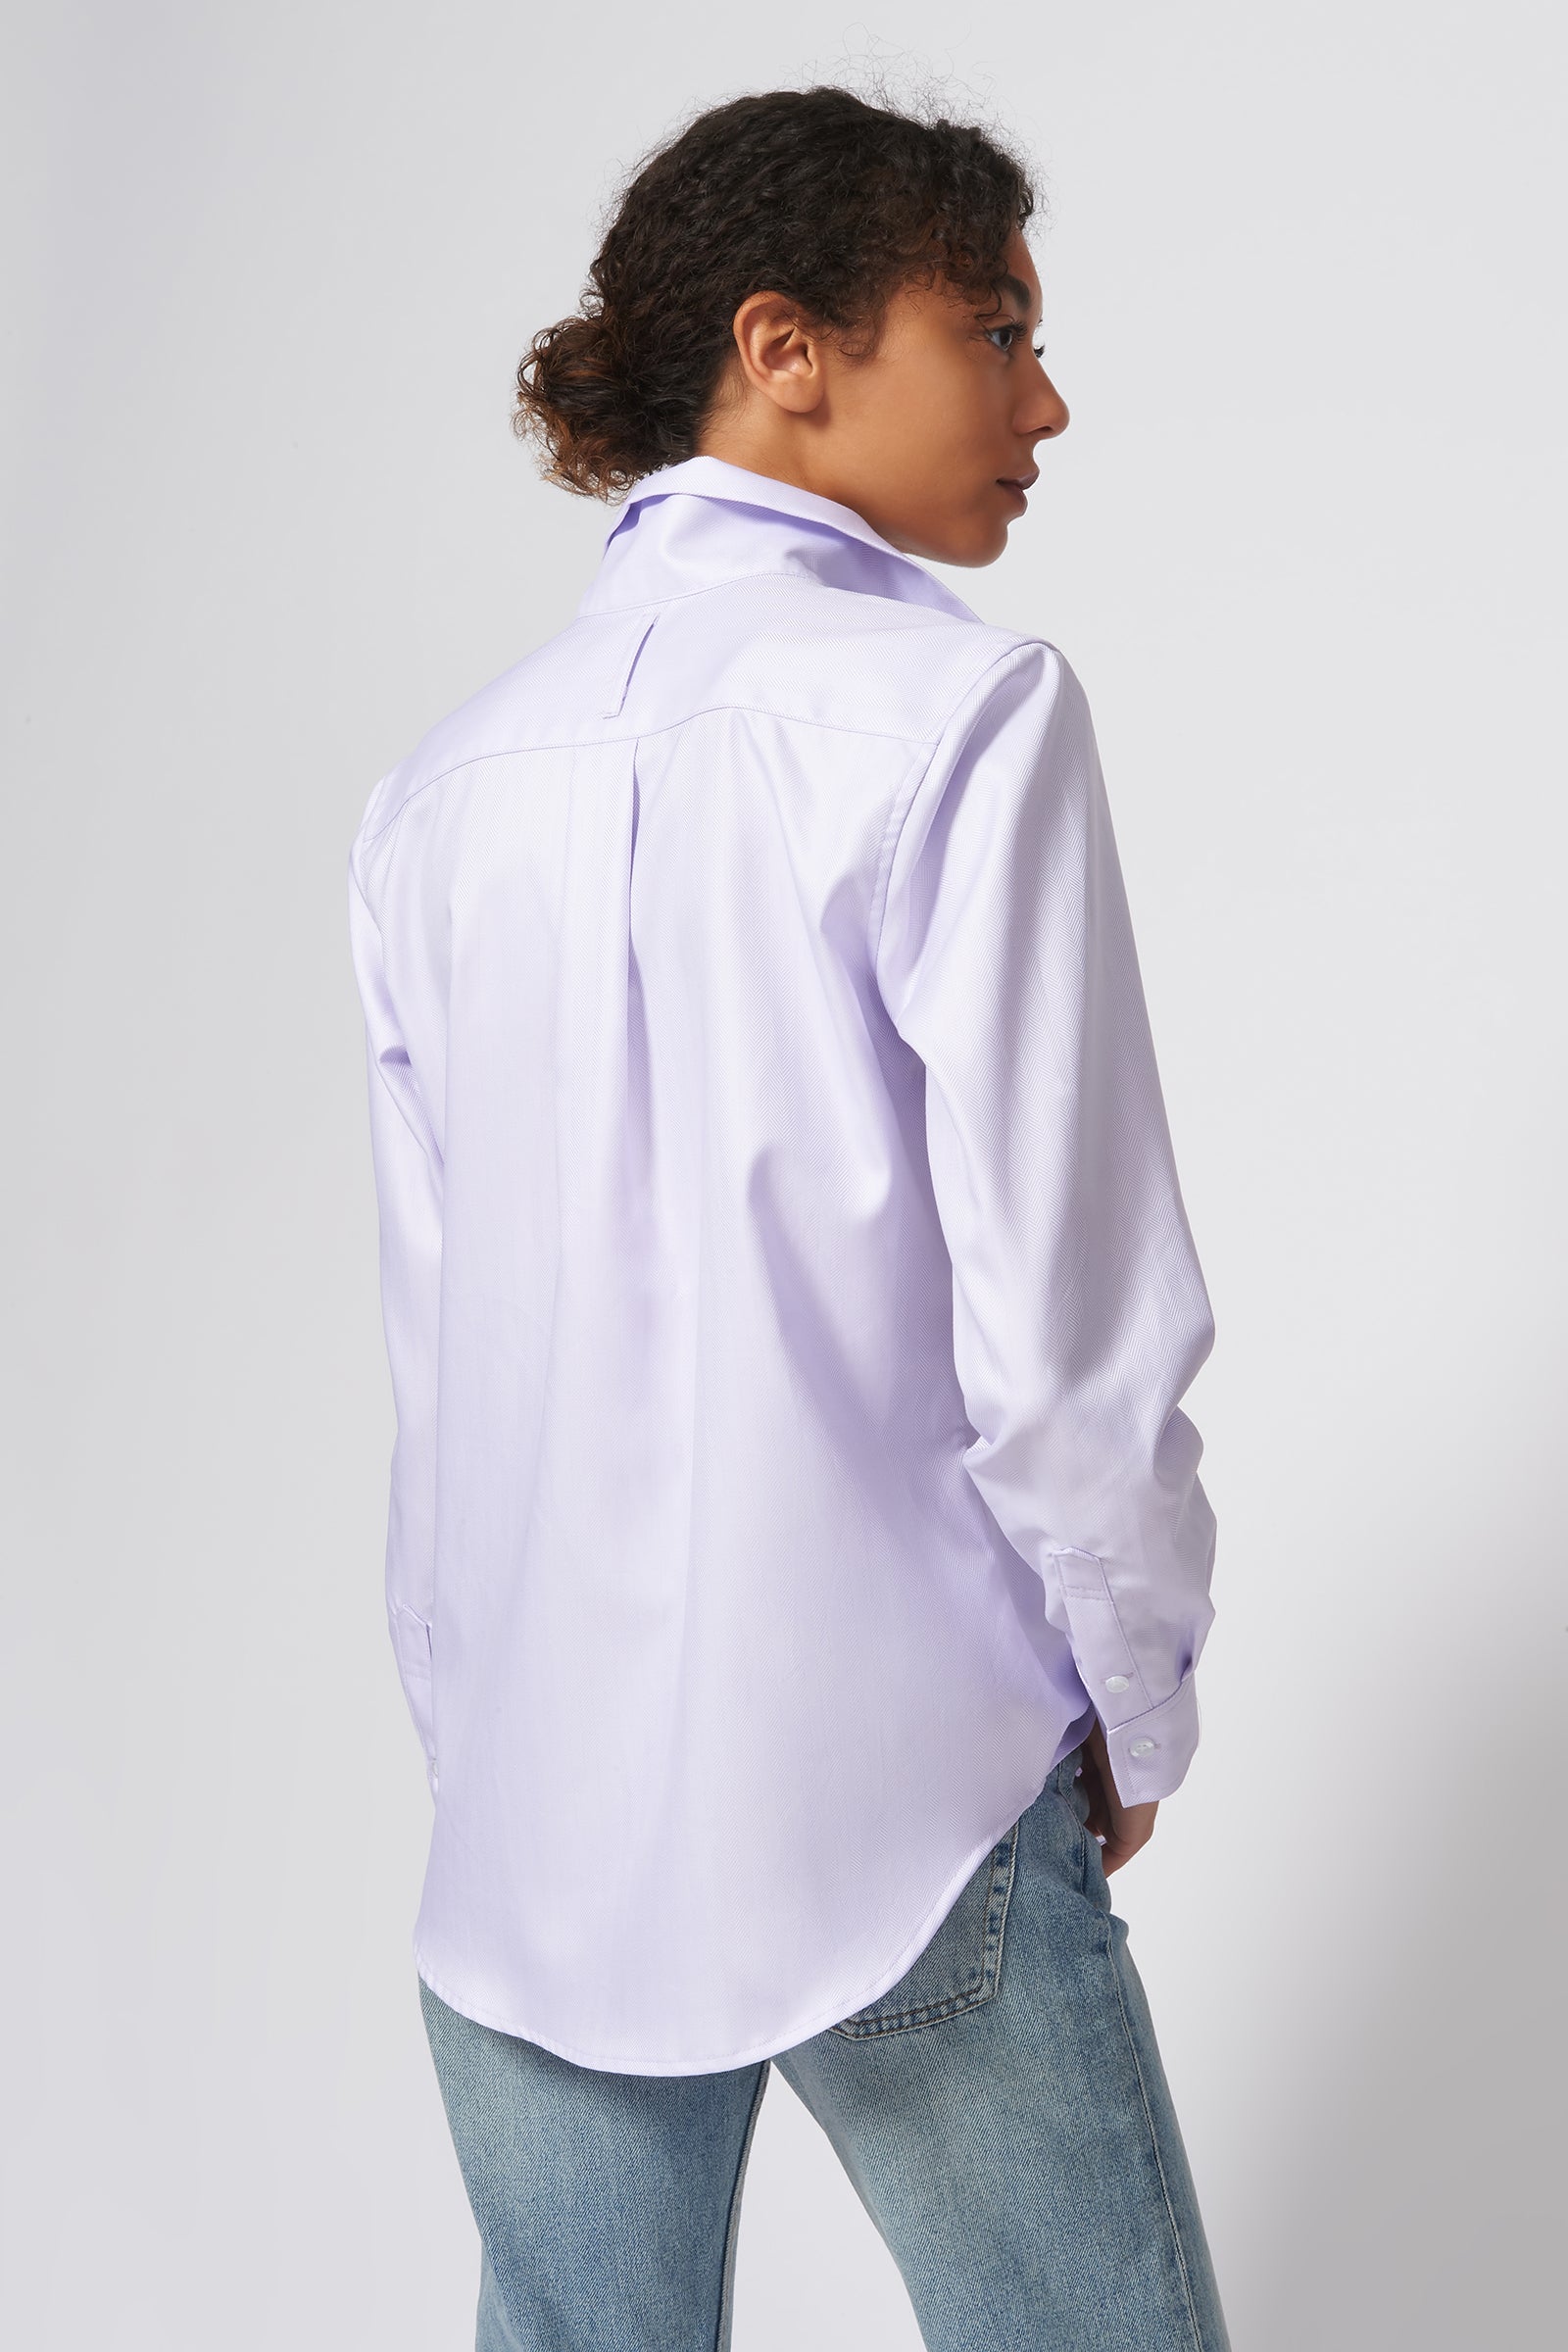 Ginna Box Pleat Shirt in White Herringbone Made From 100% Cotton – KAL  RIEMAN